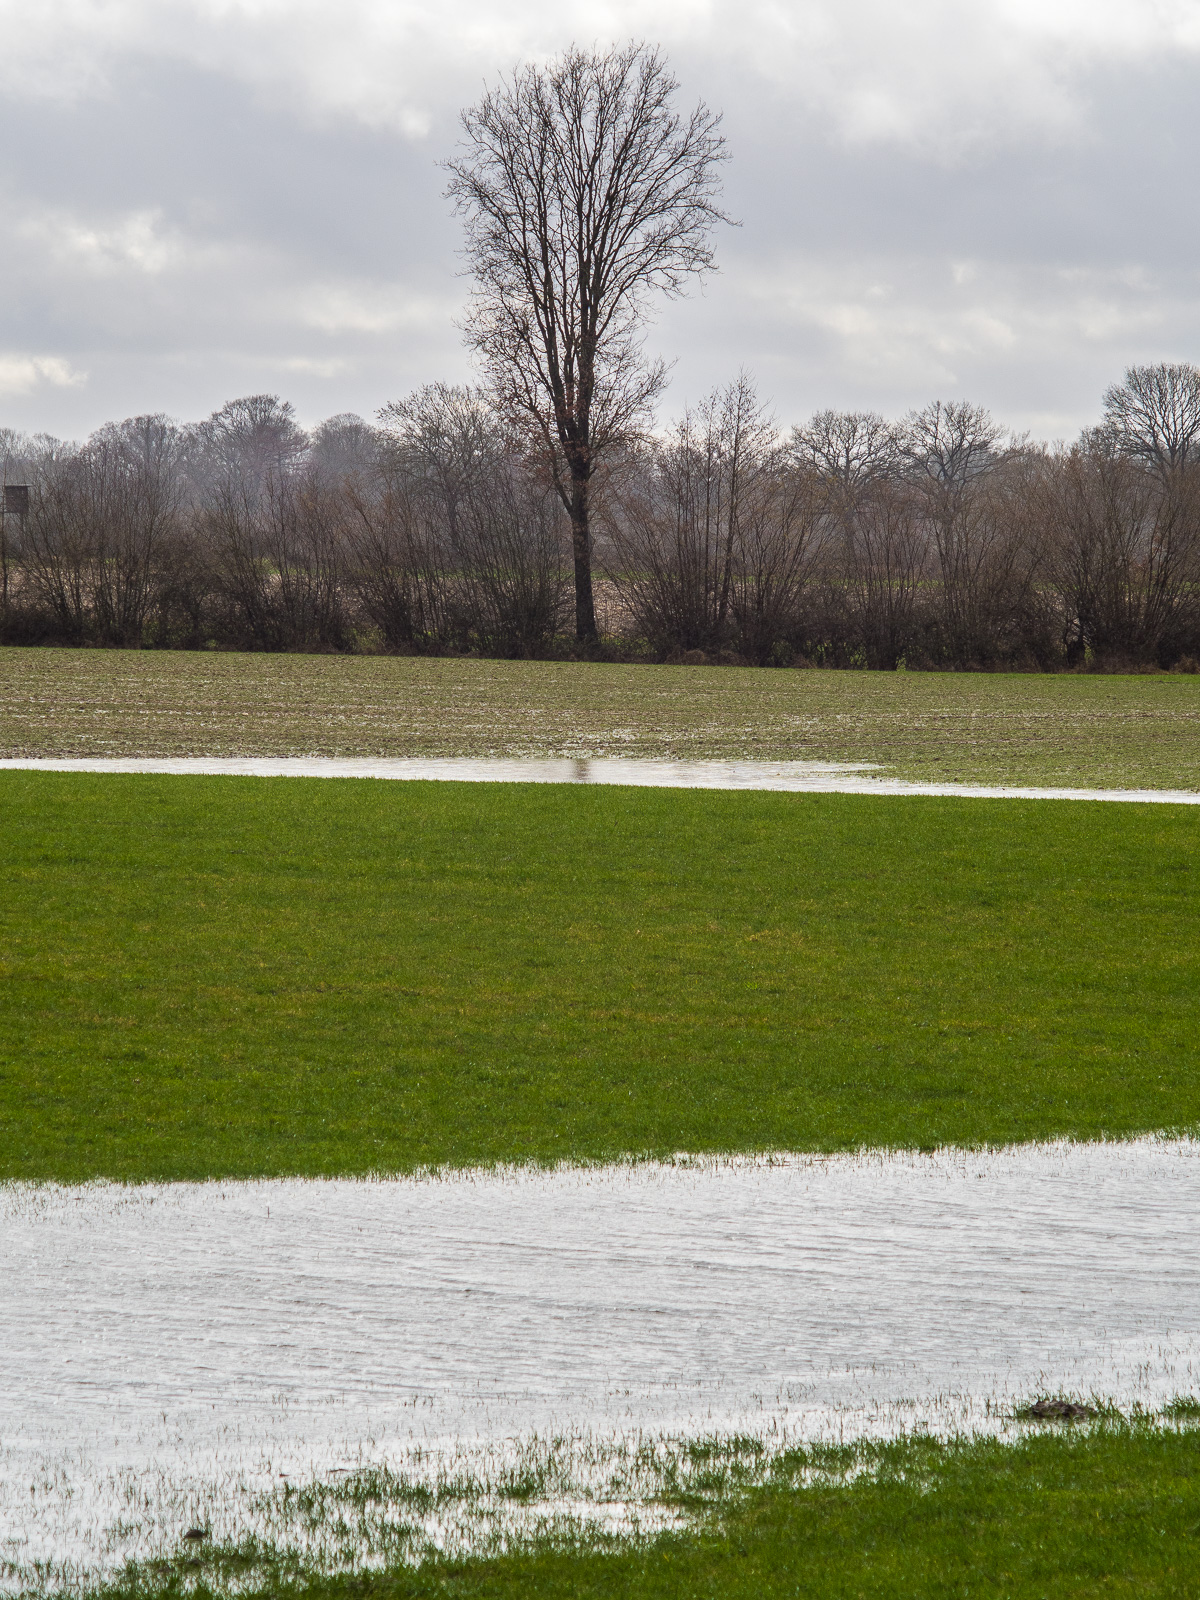 Ein einzelner schmaler Baum am Ende eines Feldes, davor die Wiese, teilweise überschwemmt, an zwei Stellen viel Wasser, als würde ein Fluss durch die Wiese laufen.